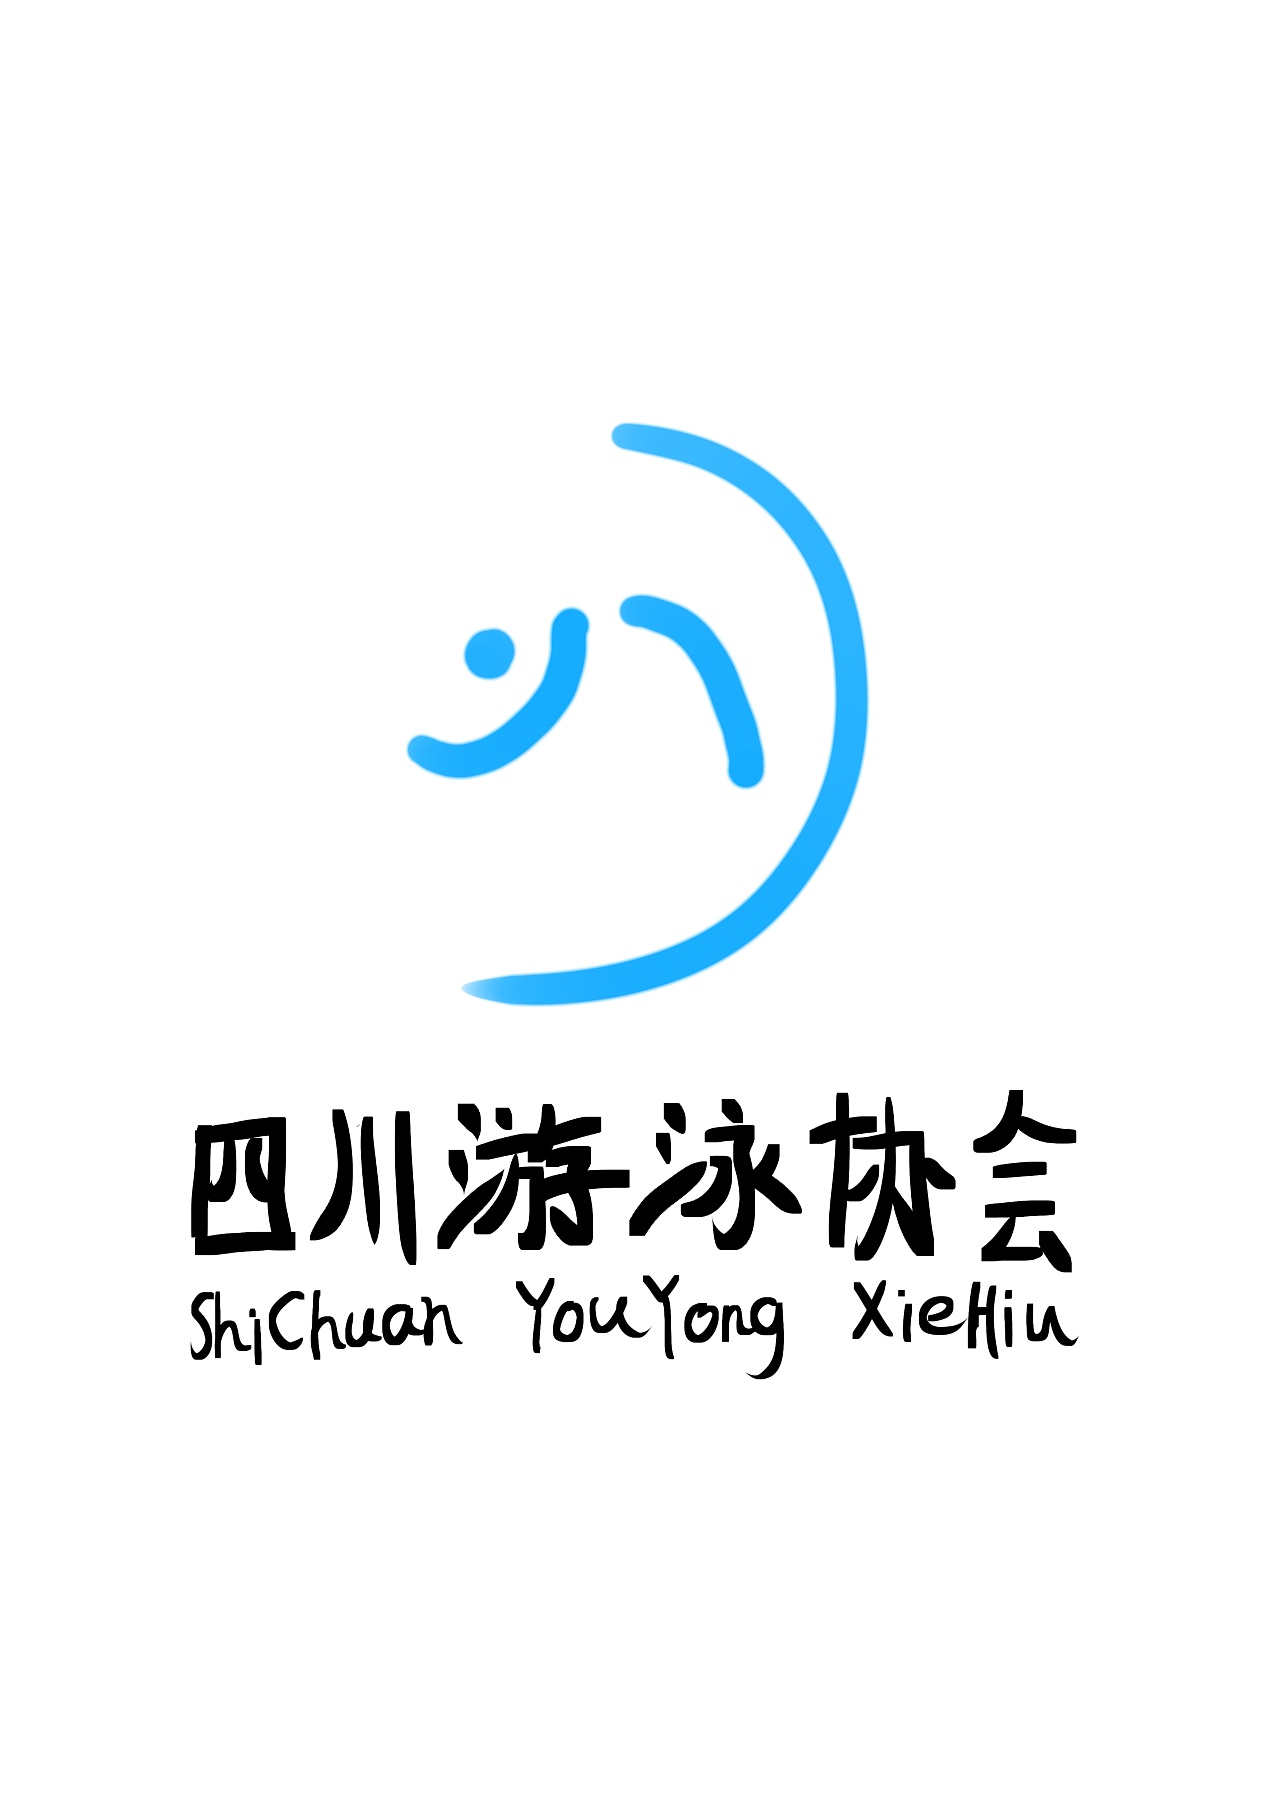 四川省游泳协会logo